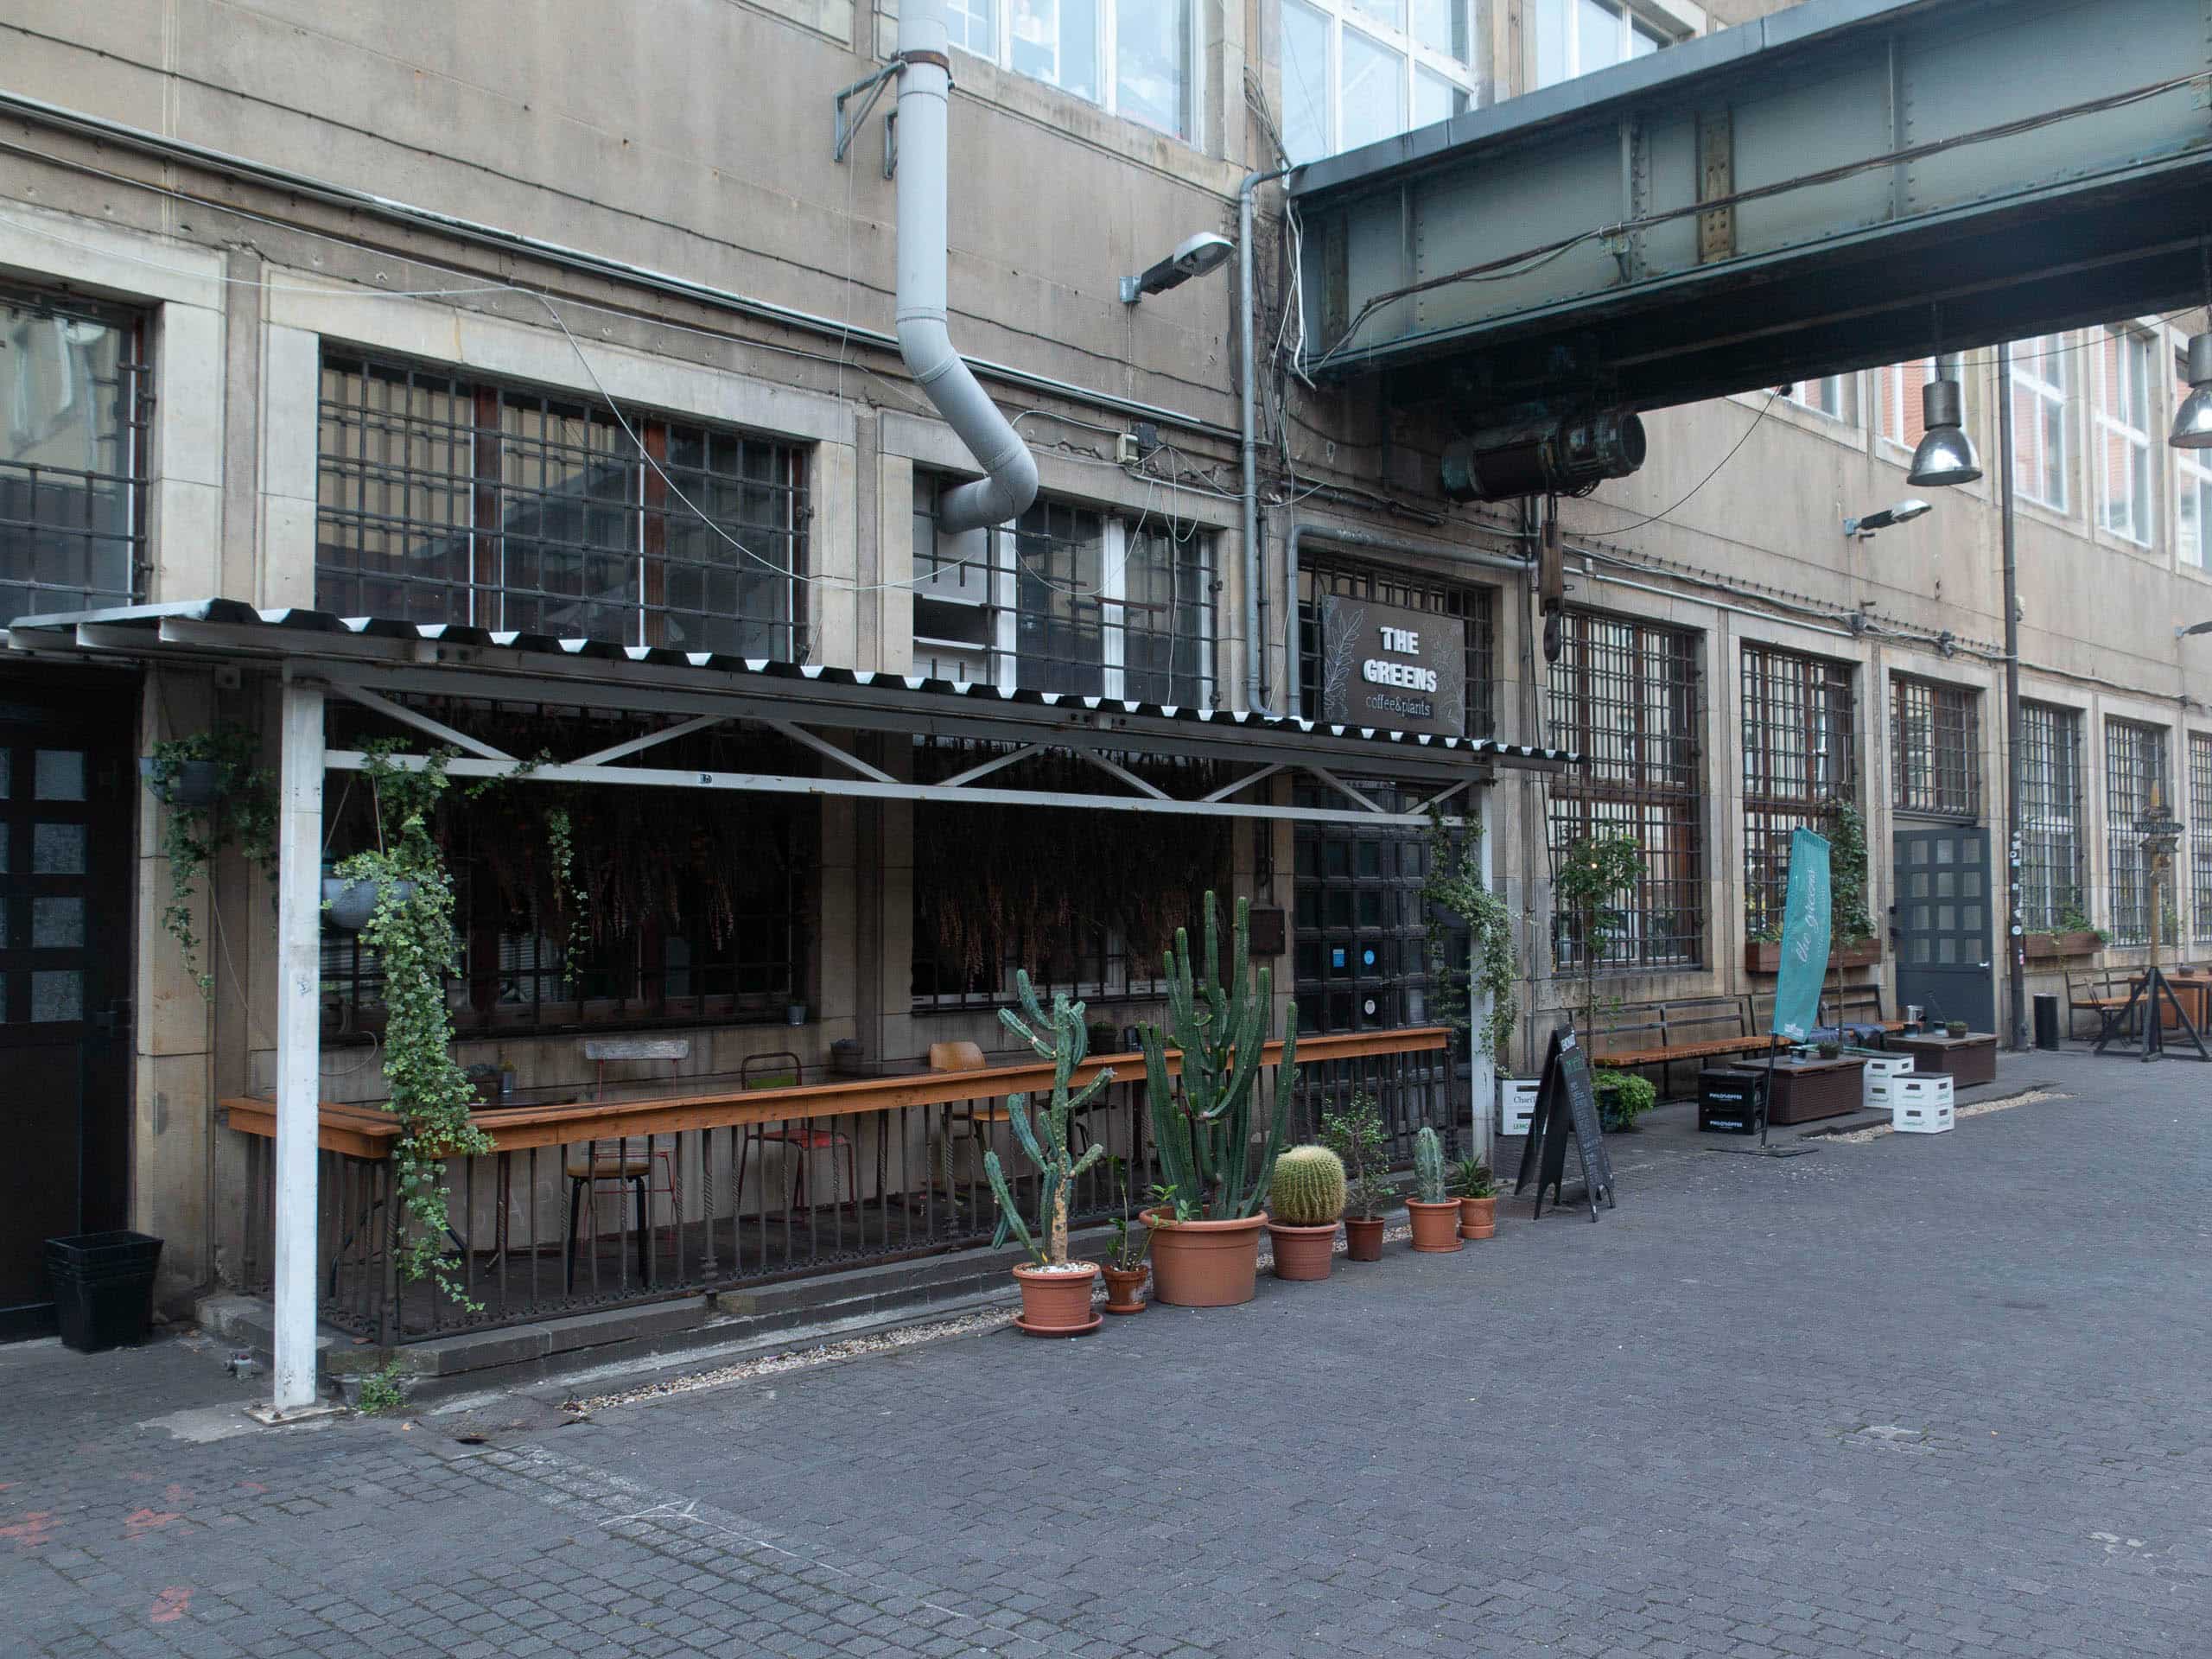 Außenansicht Cafe The Greens, überdachte Terrasse davor mit Stühle, vor der Terasse Pflanzen, industrial